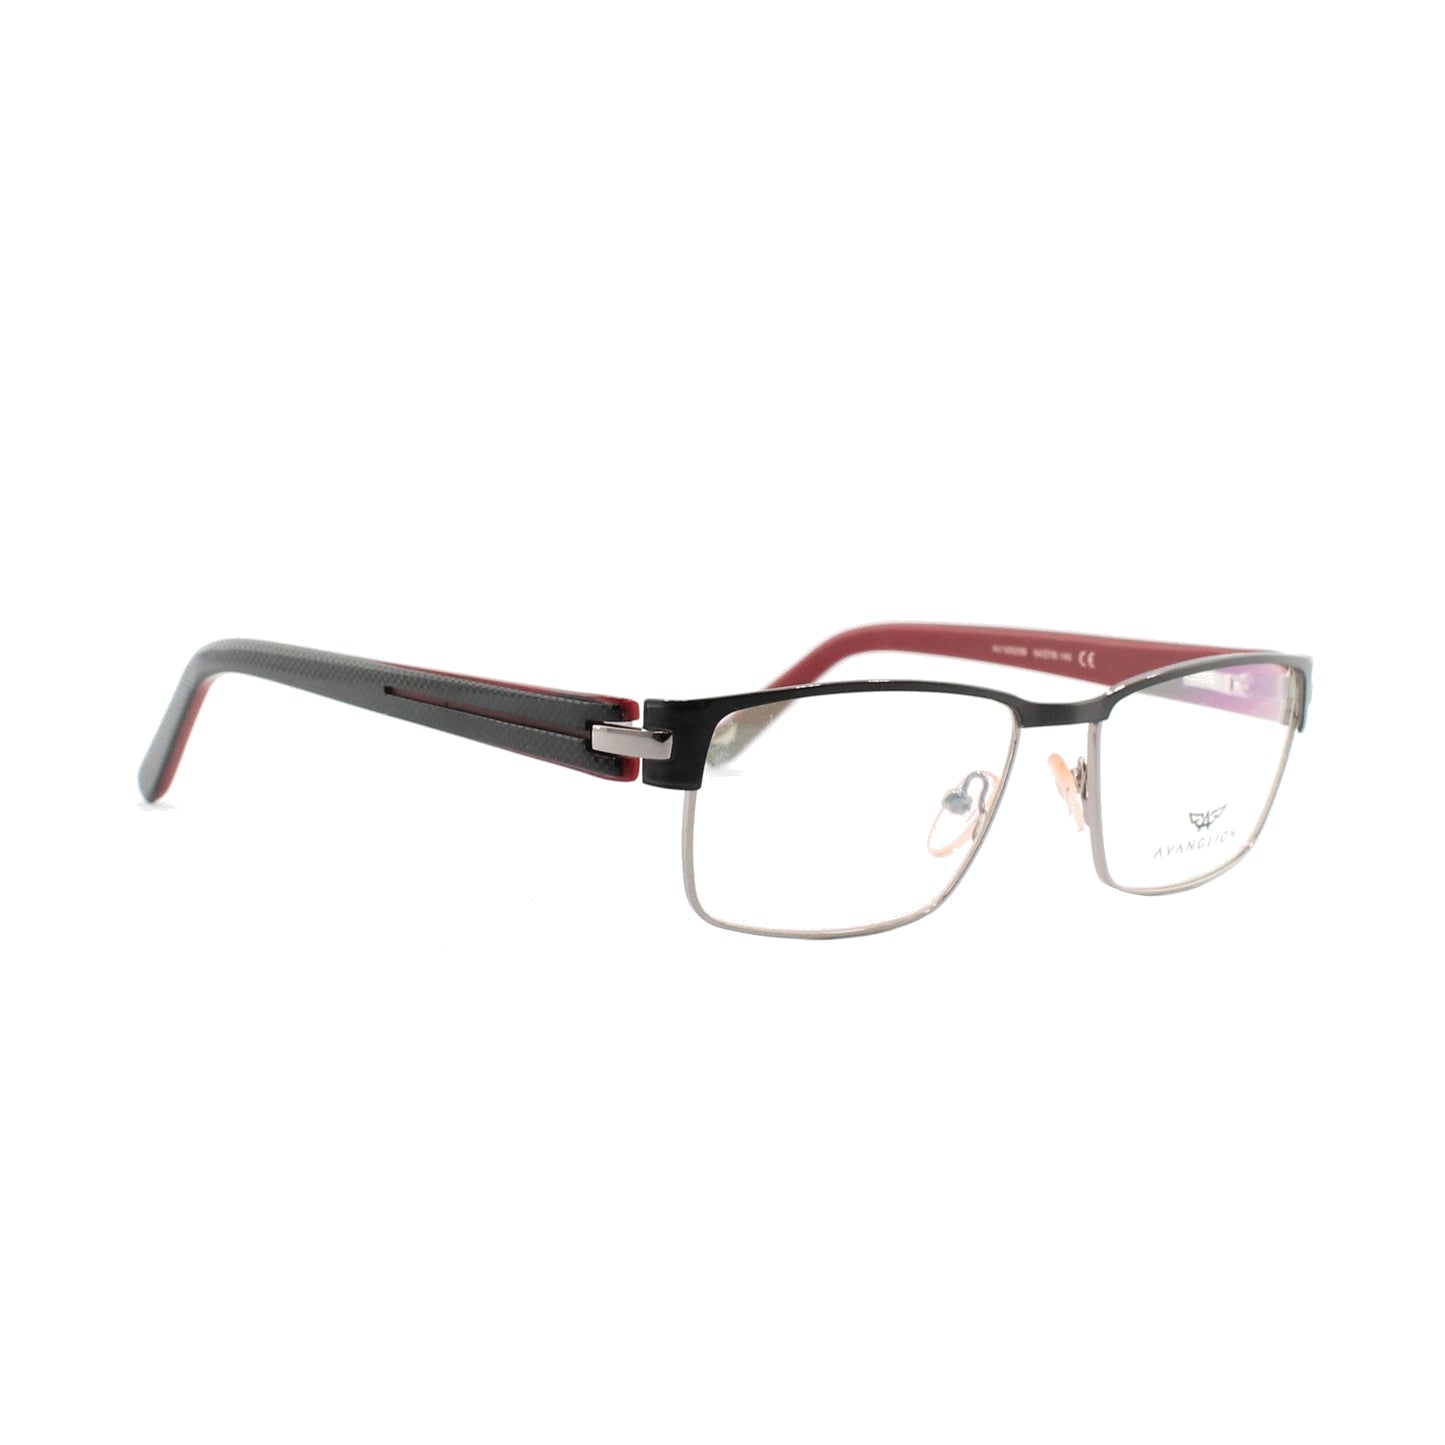 Montatura per occhiali Avanglion | Modello AV10520